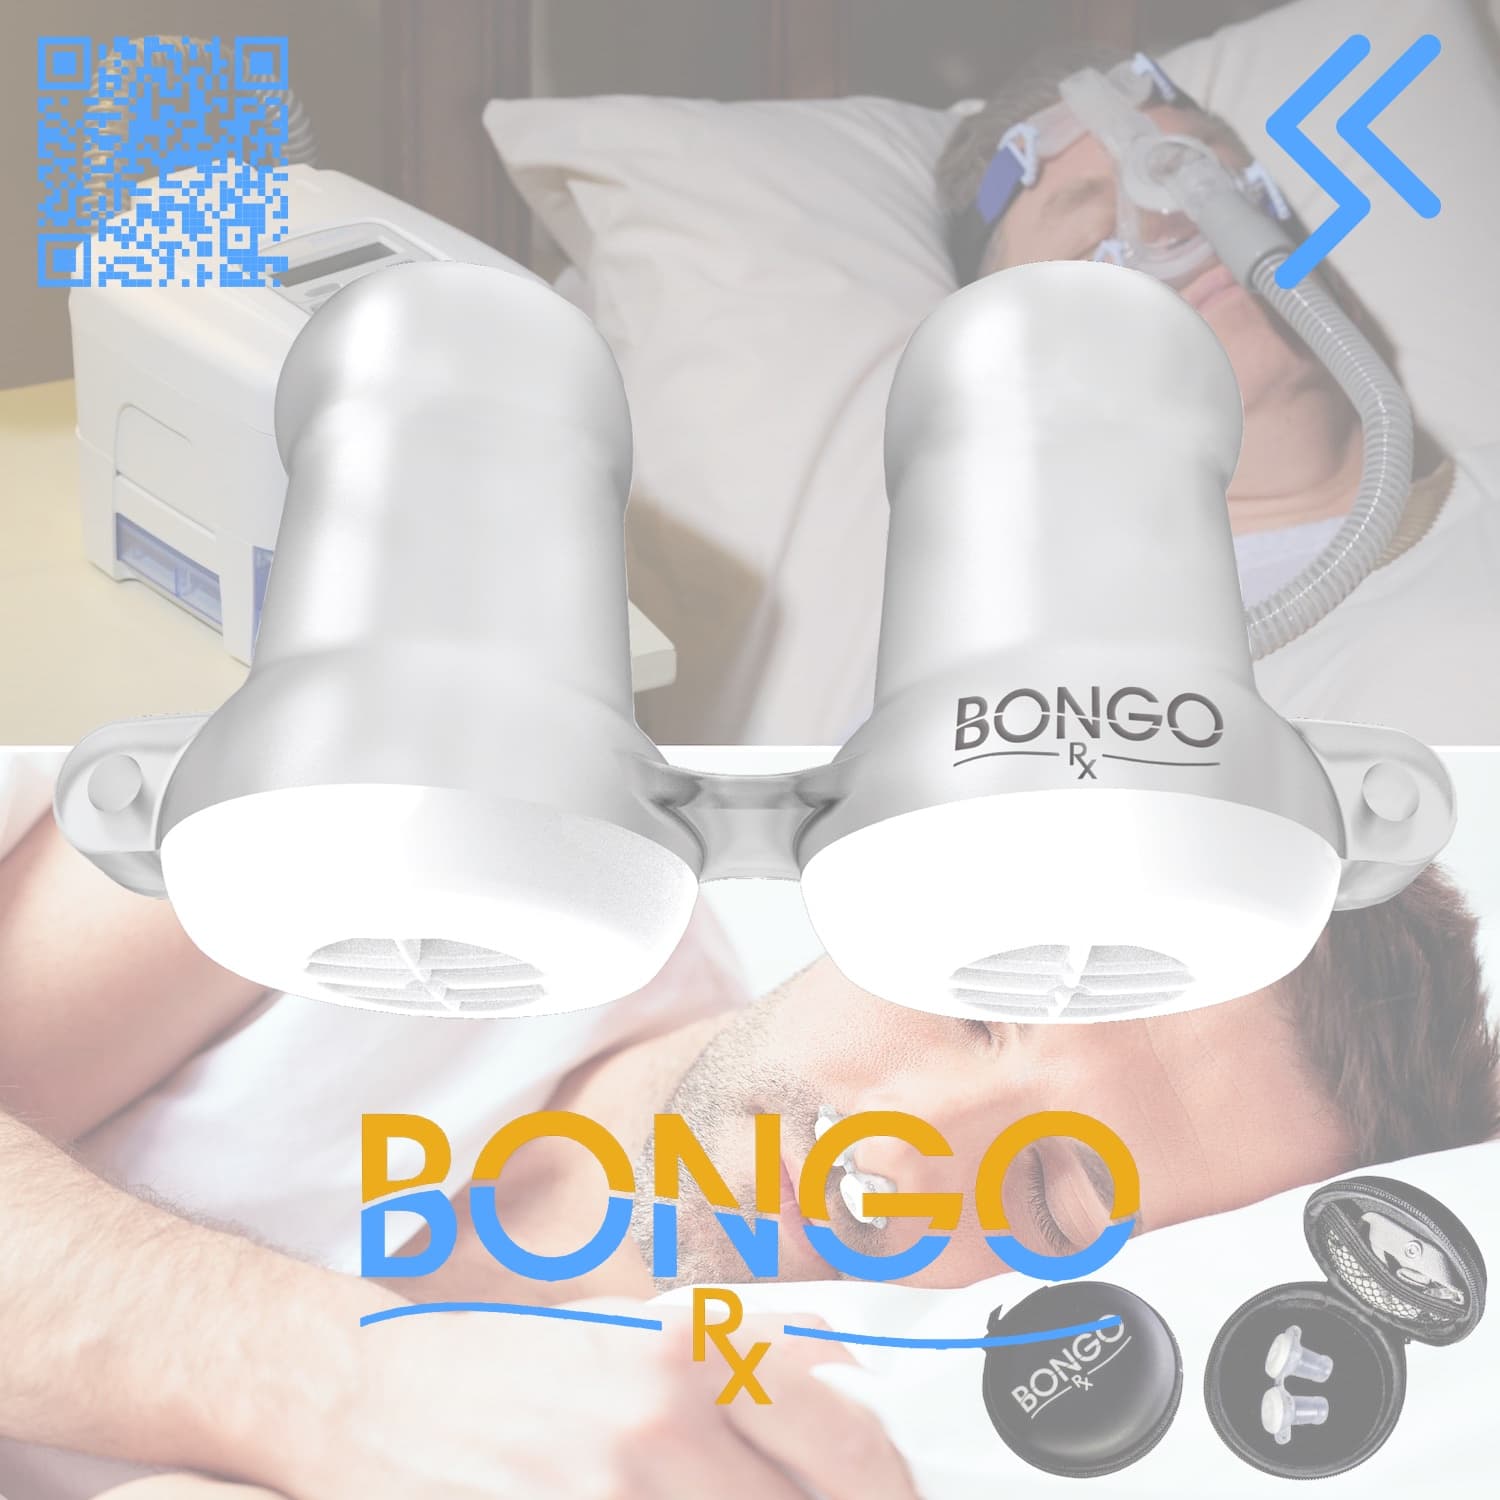 Replenishment Pack Bongo Rx - CPAP machine vc. Bongo Rx